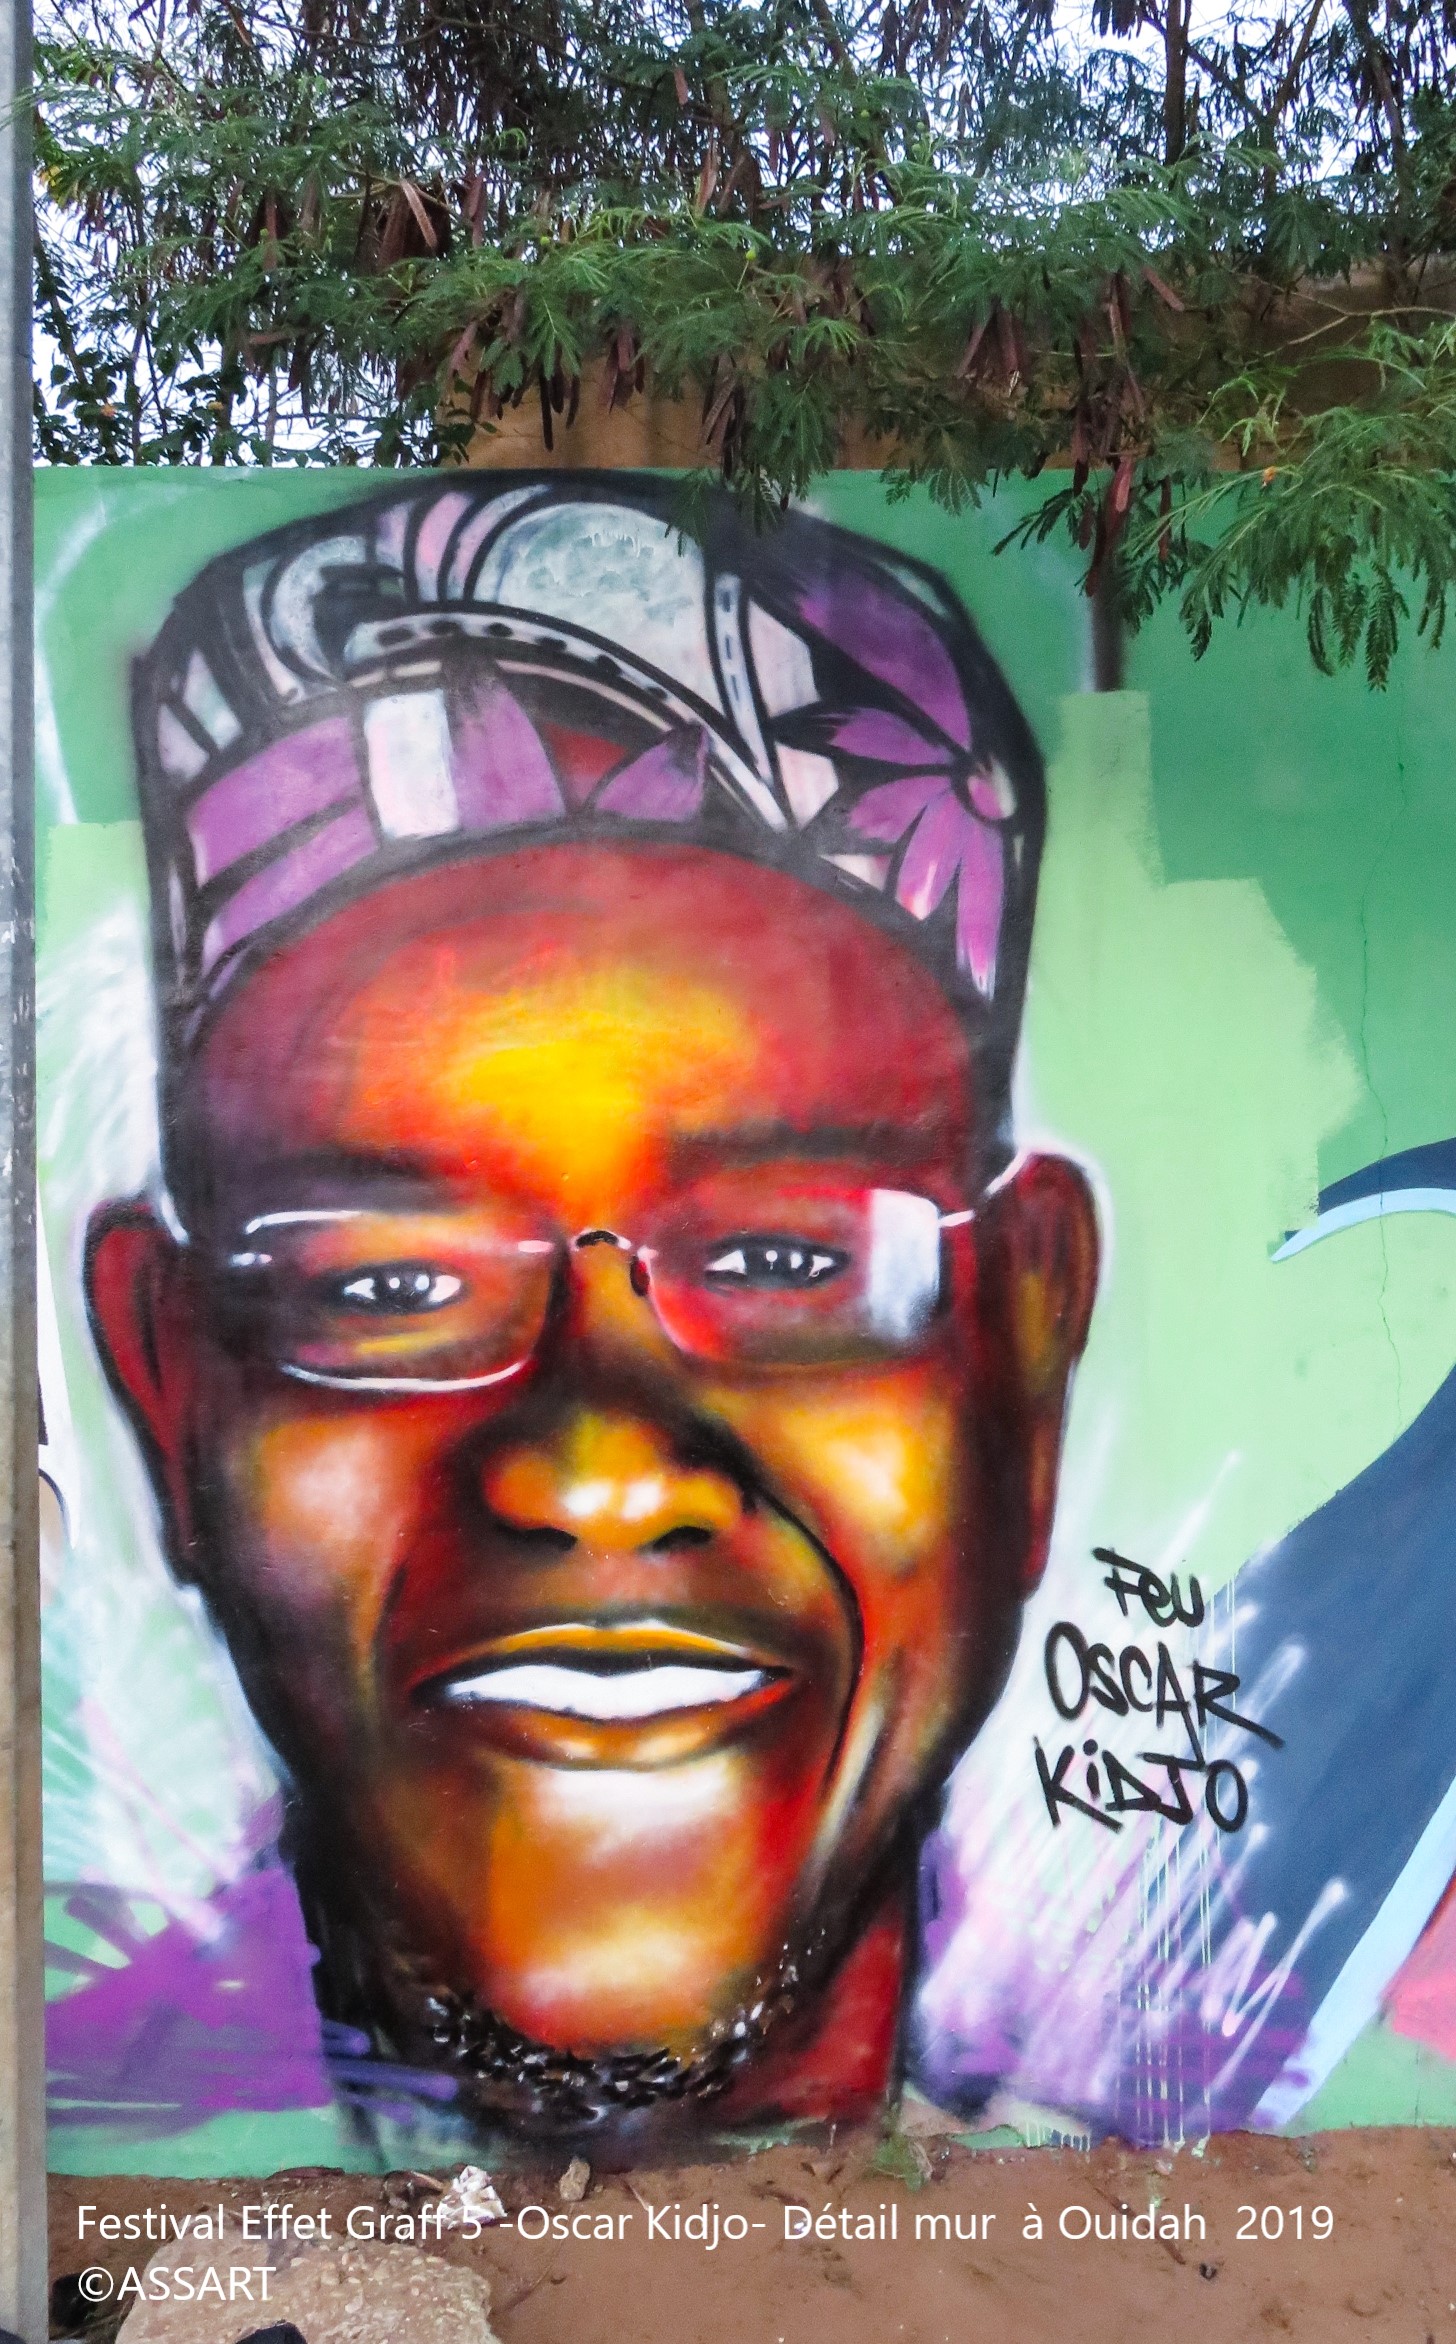 Festival Effet Graff 5 -Oscar Kidjo- Détail mur à Ouidah 2019